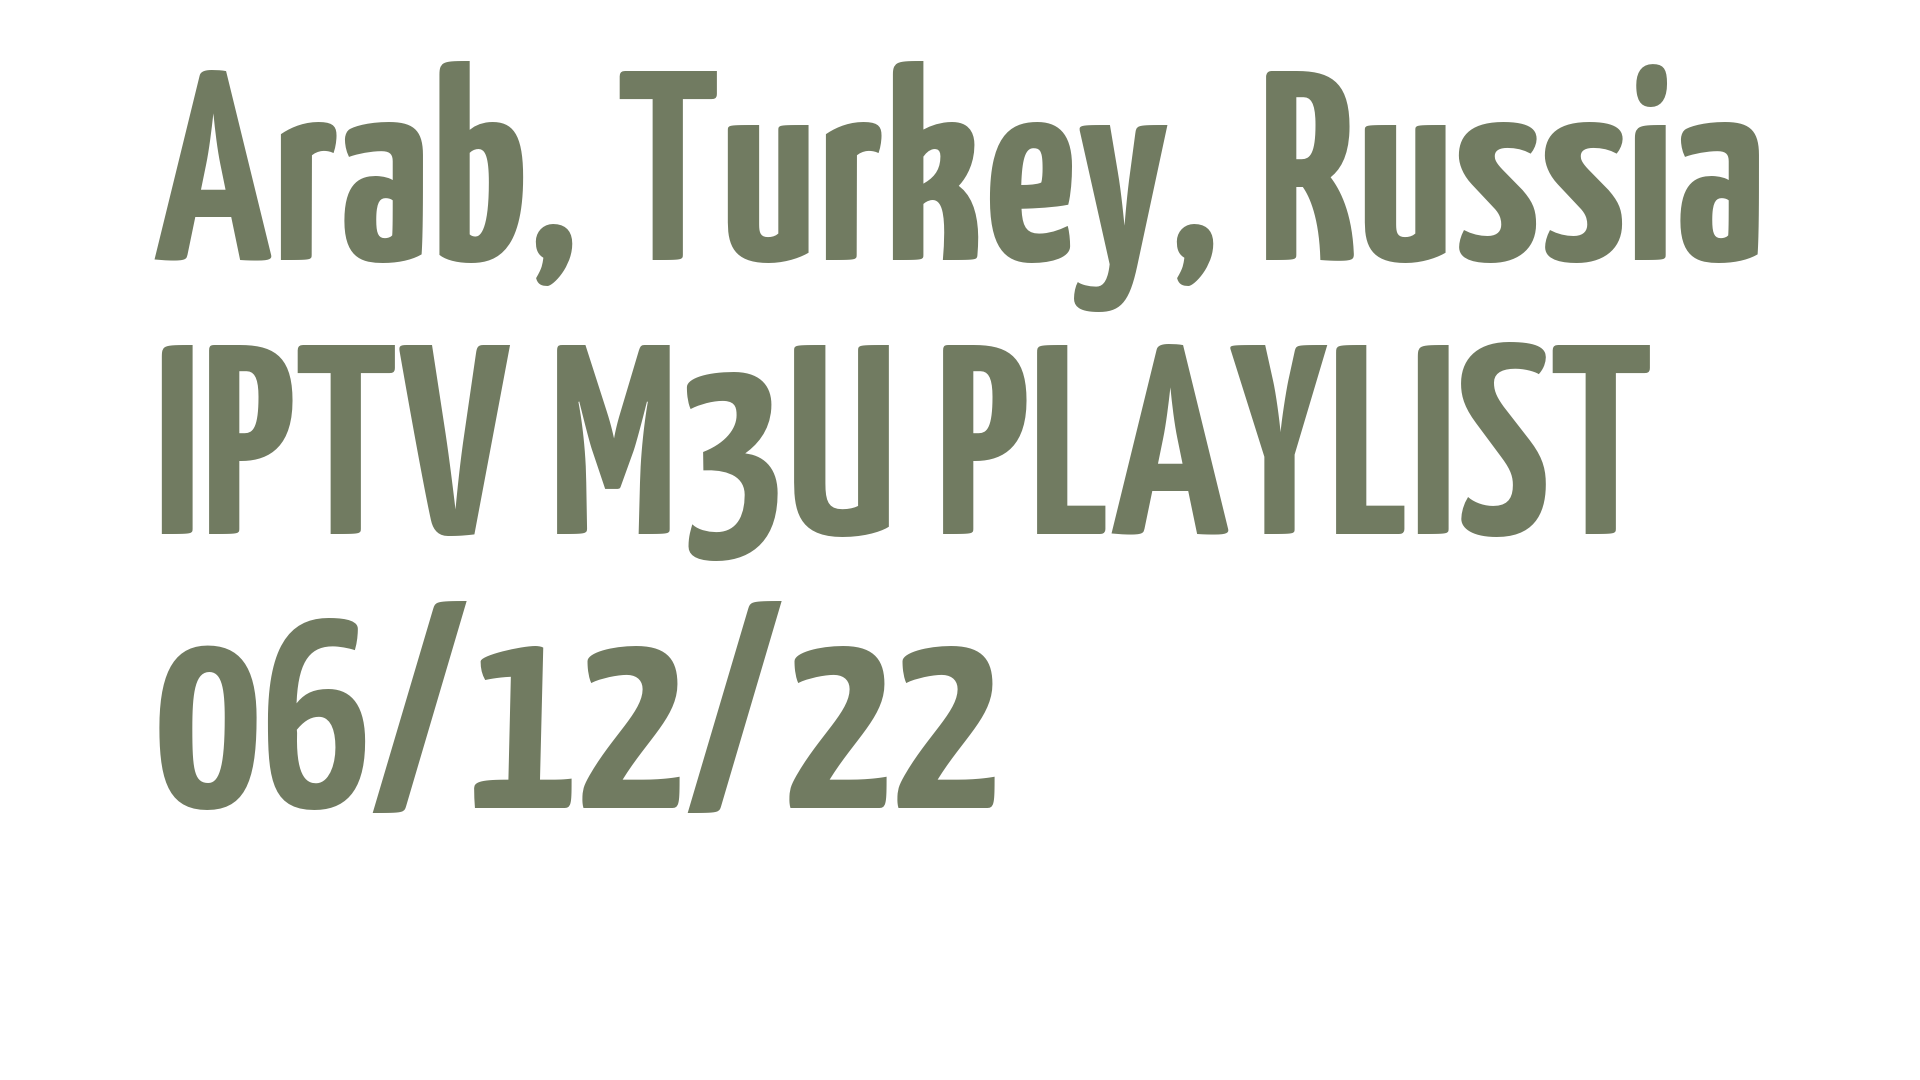 ARAB TURKEY RUSSIA FREE IPTV LINKS M3U 06 DECEMBER 2022